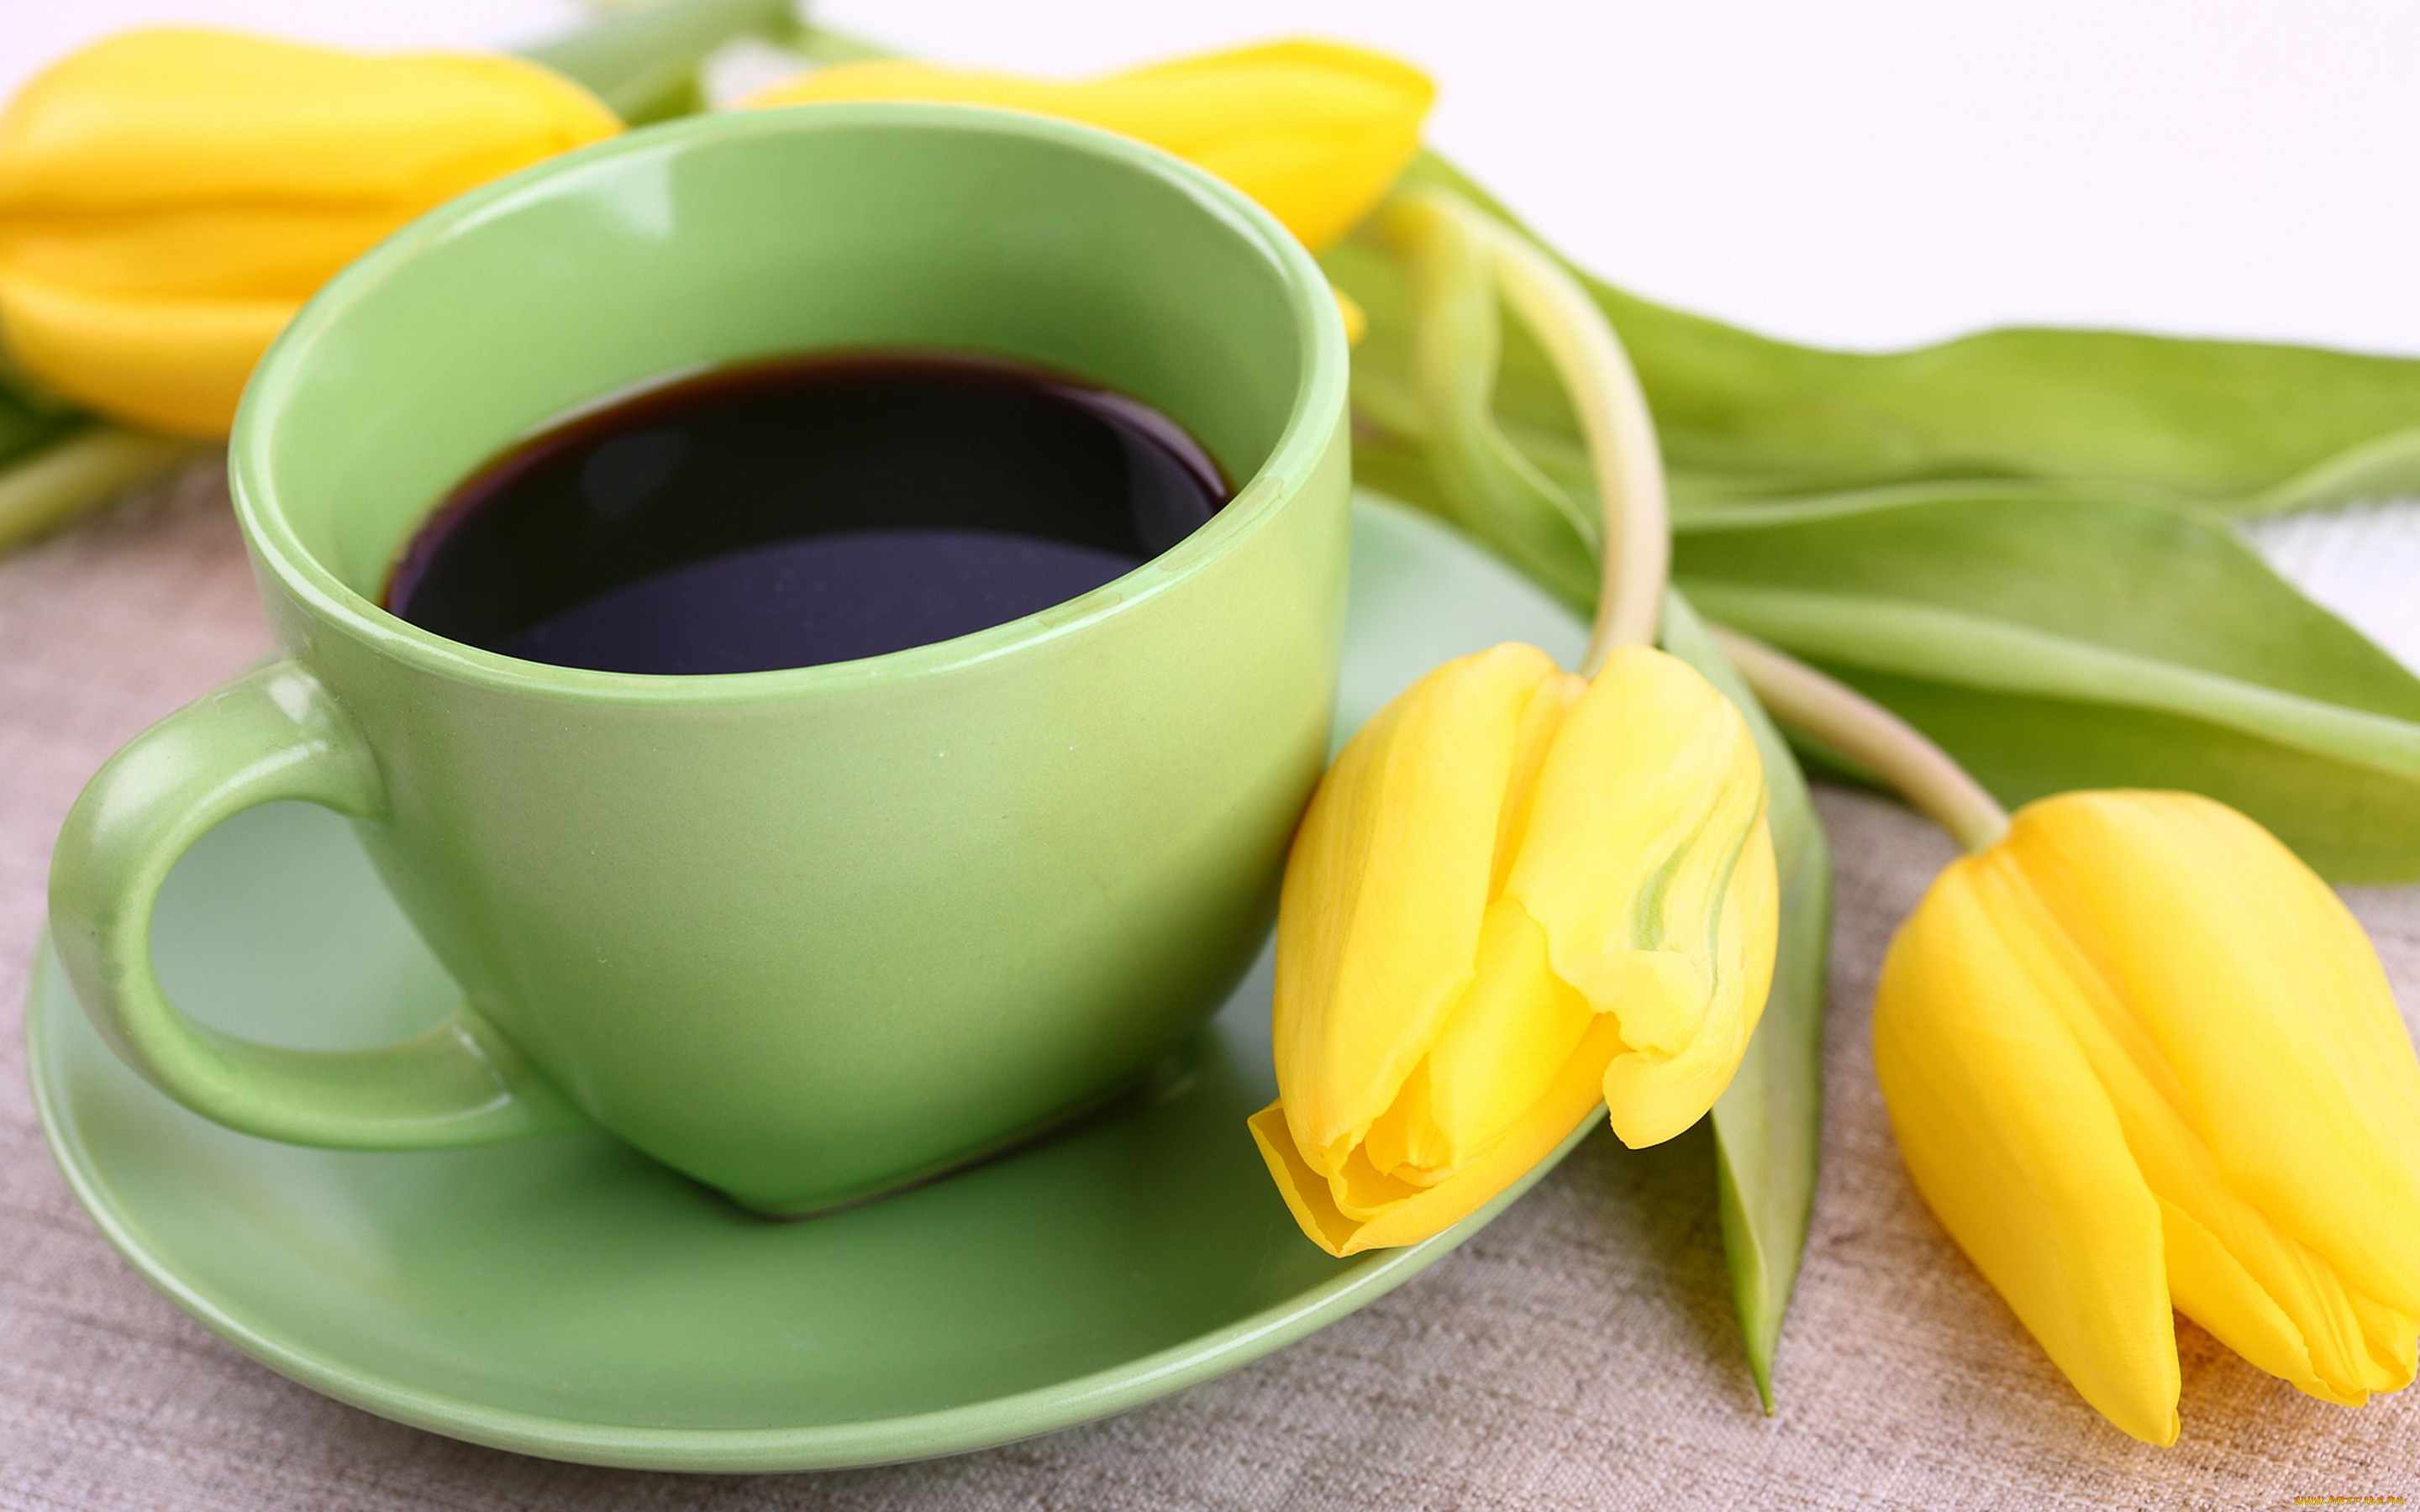 еда, кофе, , кофейные, зёрна, yellow, цветы, тюльпаны, чашка, flowers, tulips, coffee, cup, breakfast